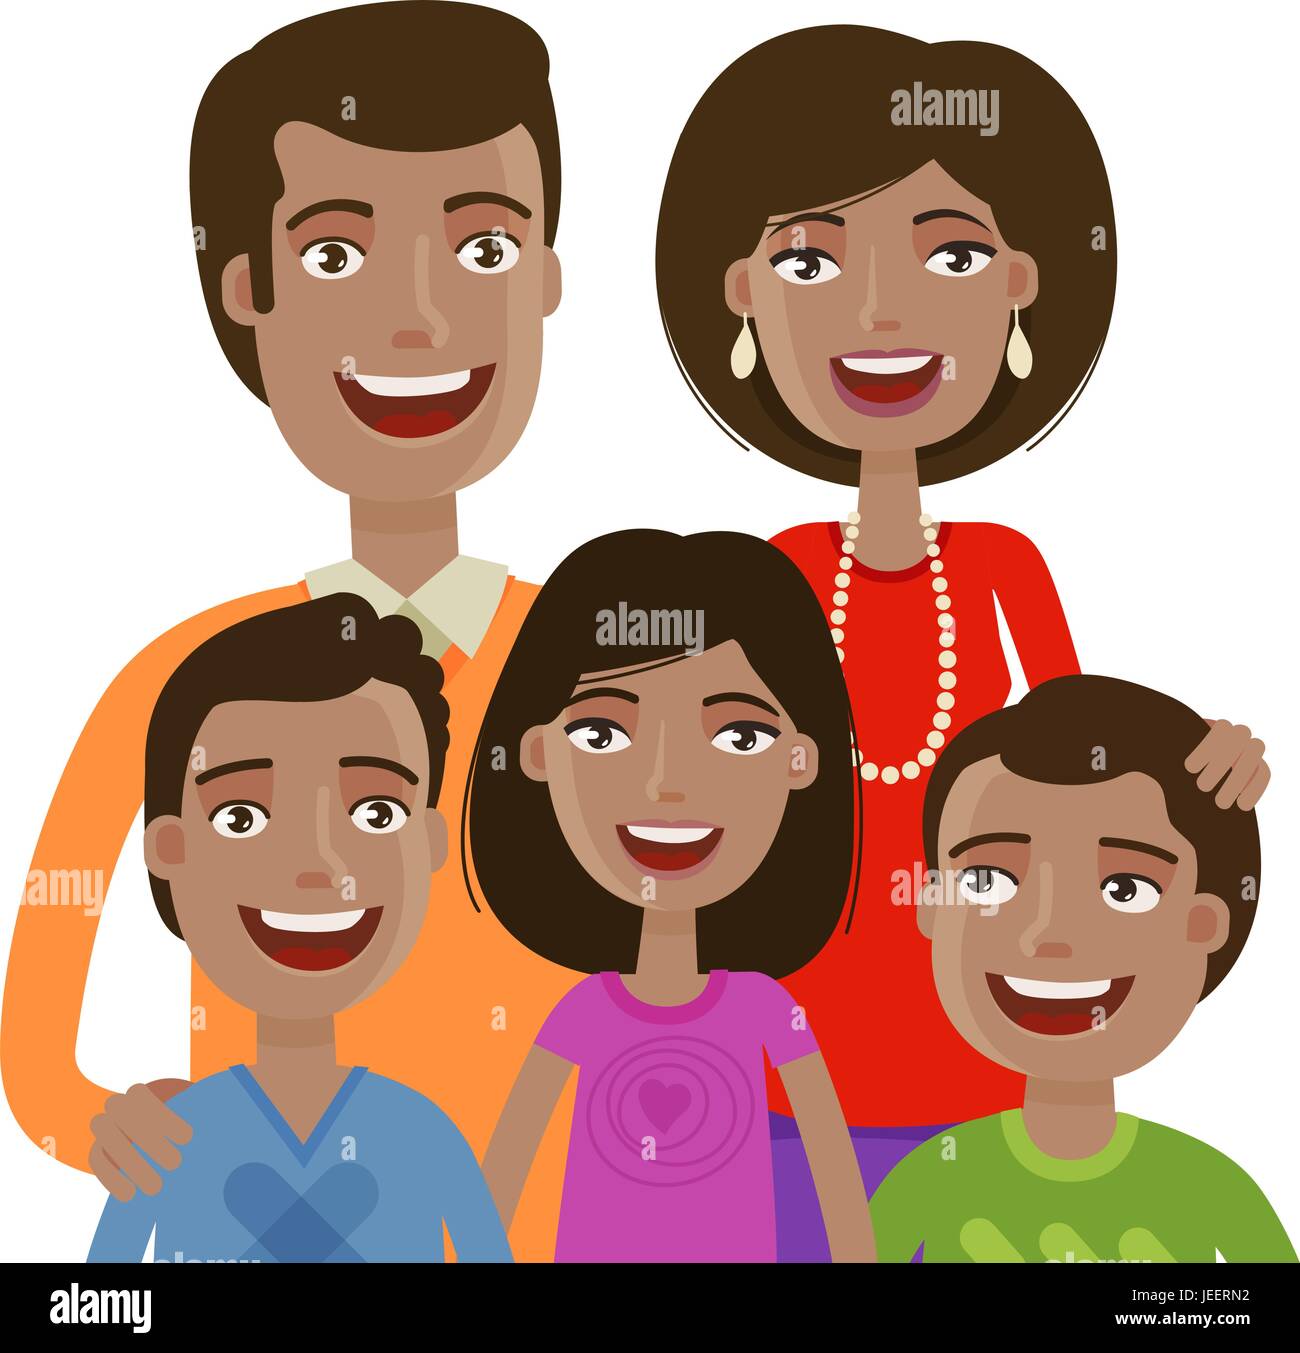 Porträt von fröhlichen Familienglück. Leute, häusliches Leben, Eltern und Kinder. Cartoon-Vektor-illustration Stock Vektor